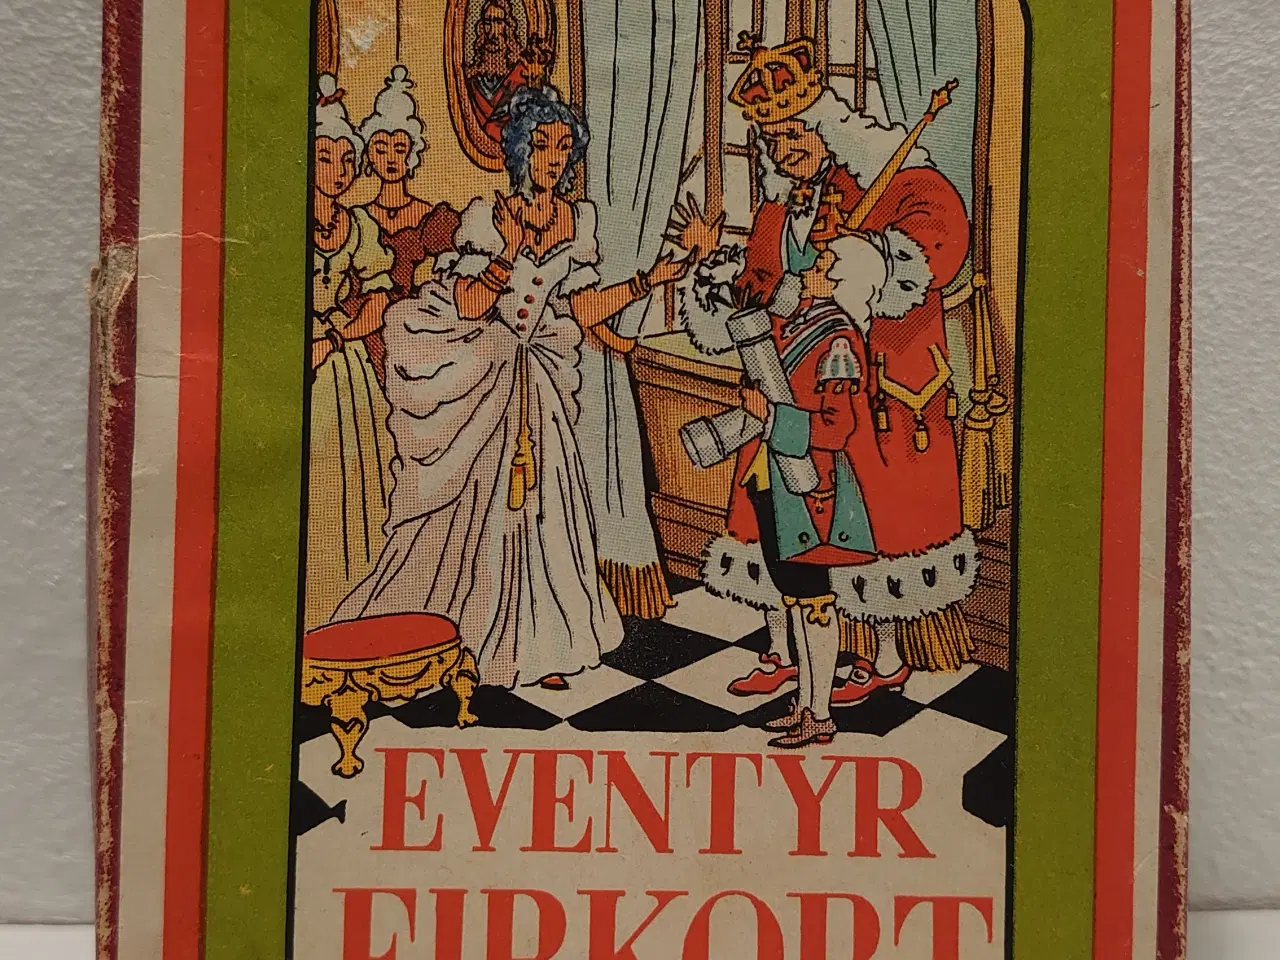 Billede 1 - Eventyr Firkort. Drechsler spil CD 201. Før 1948. 